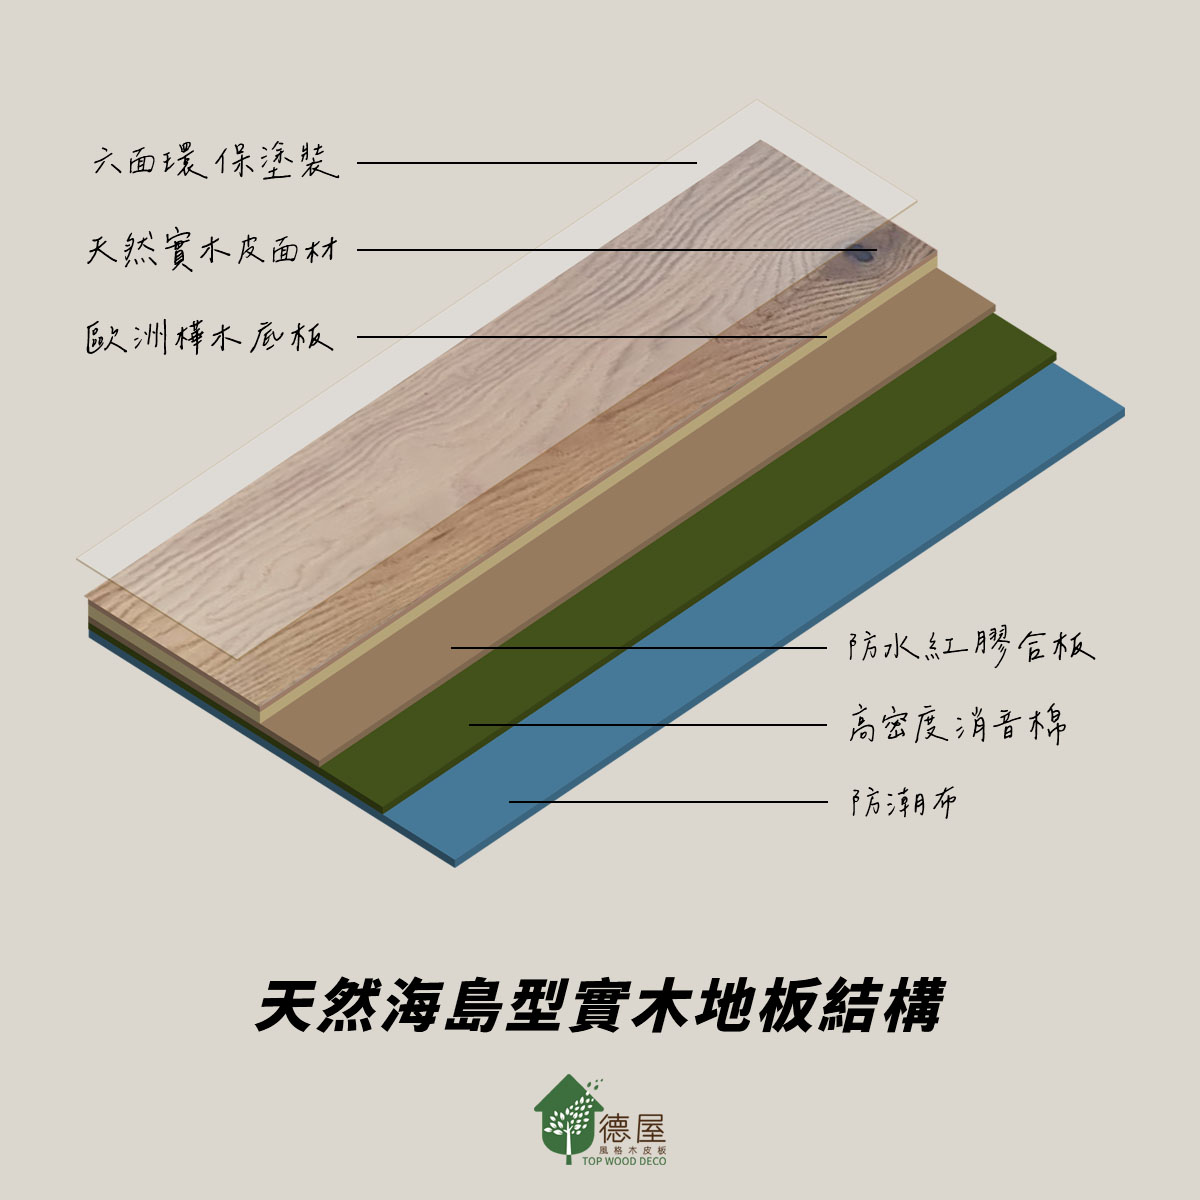 德屋天然海島型實木地板結構說明